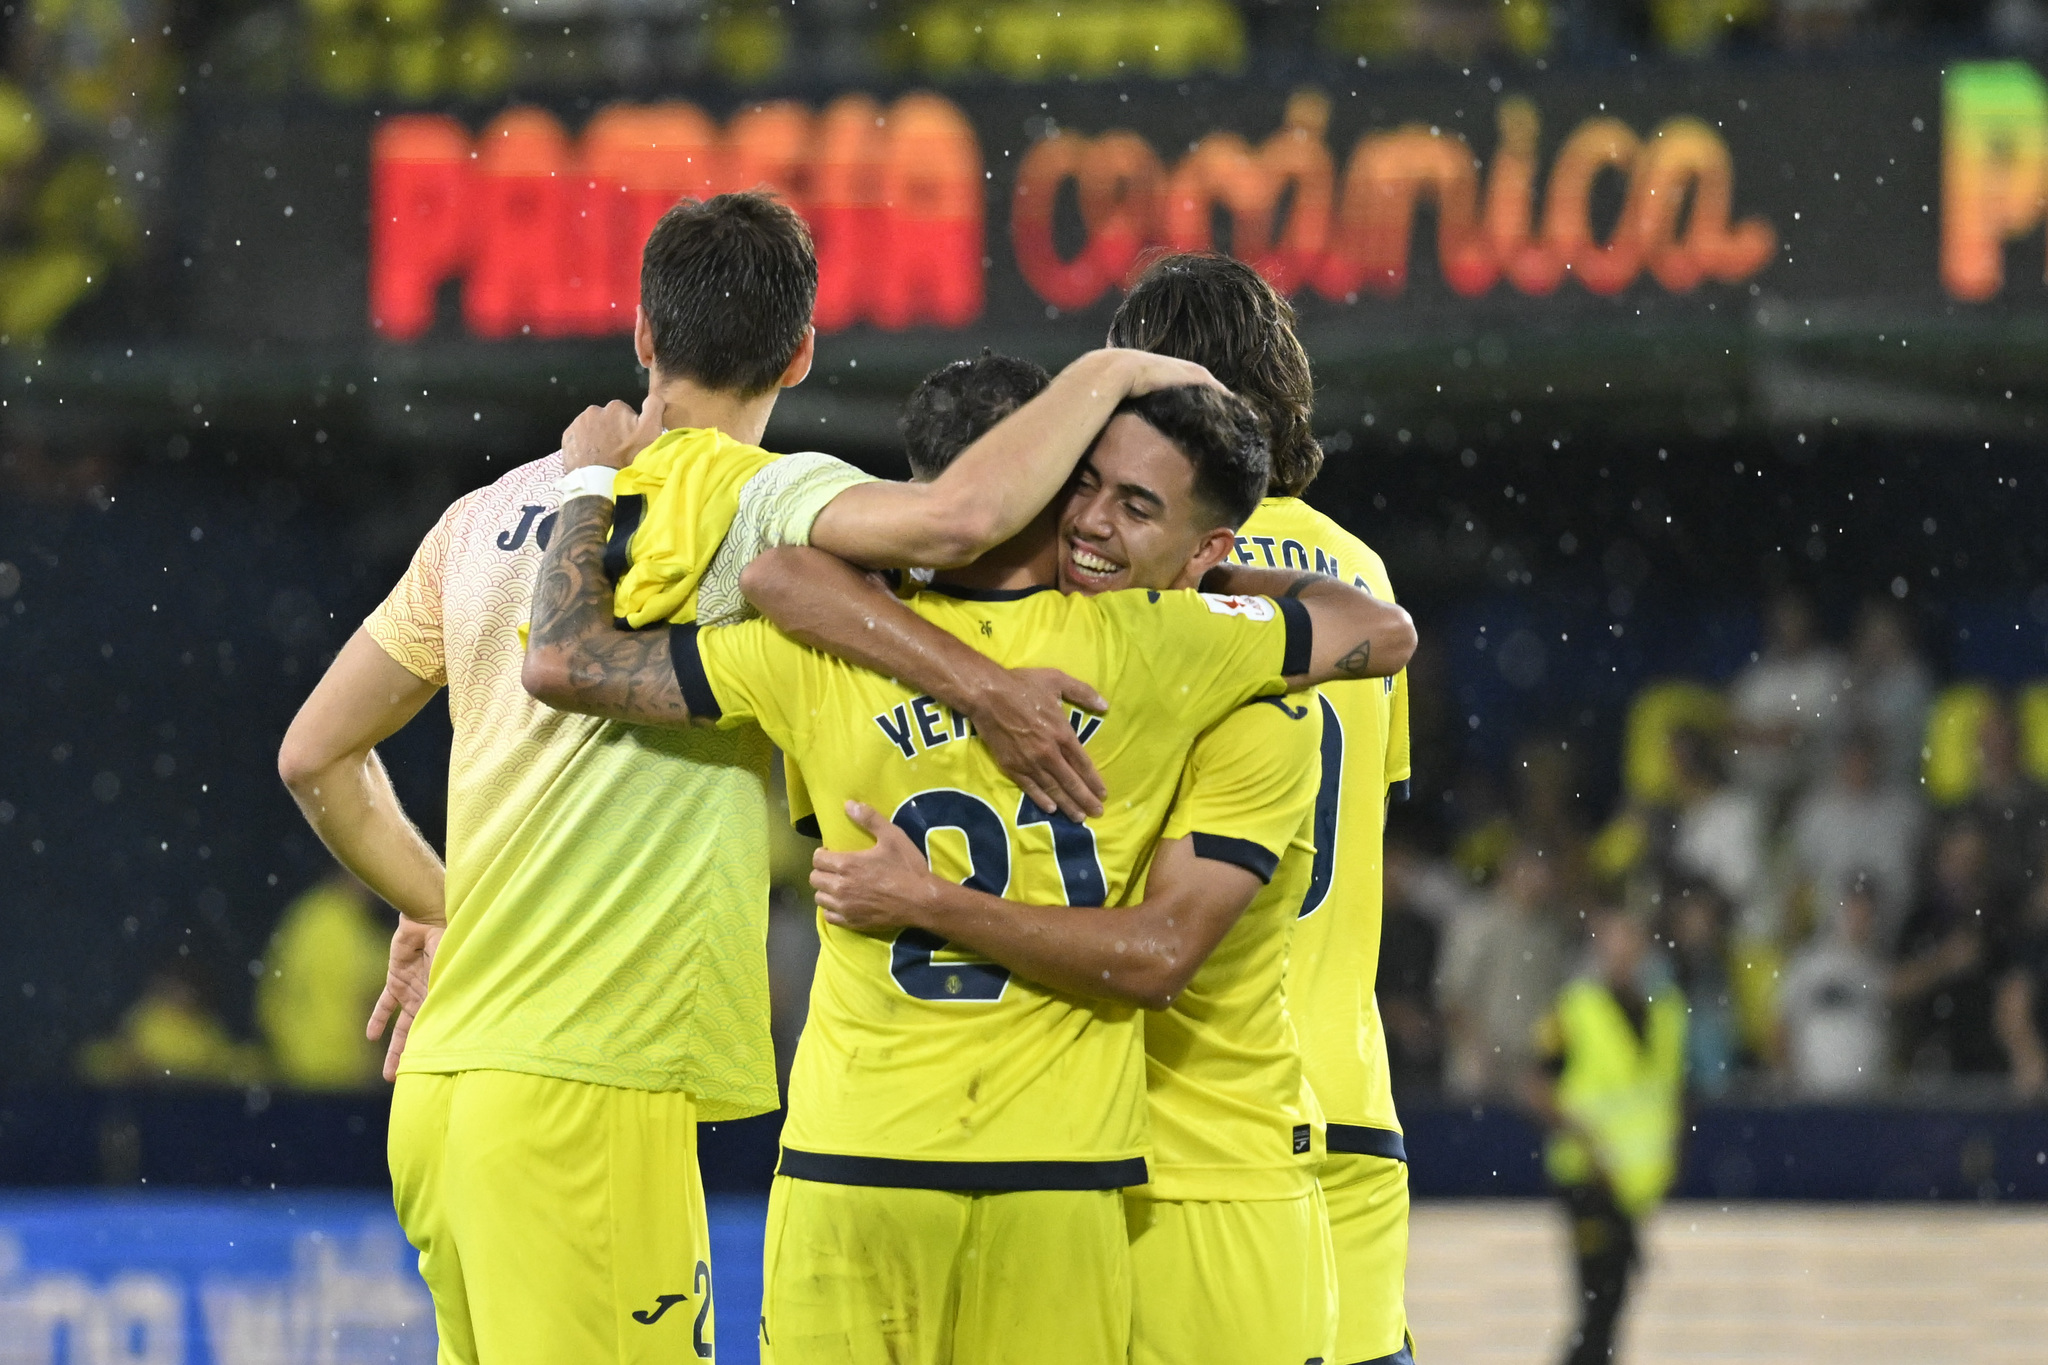 Jugadores del Villarreal celebran el 2-1 al Almería, único partido que han ganado en casa.